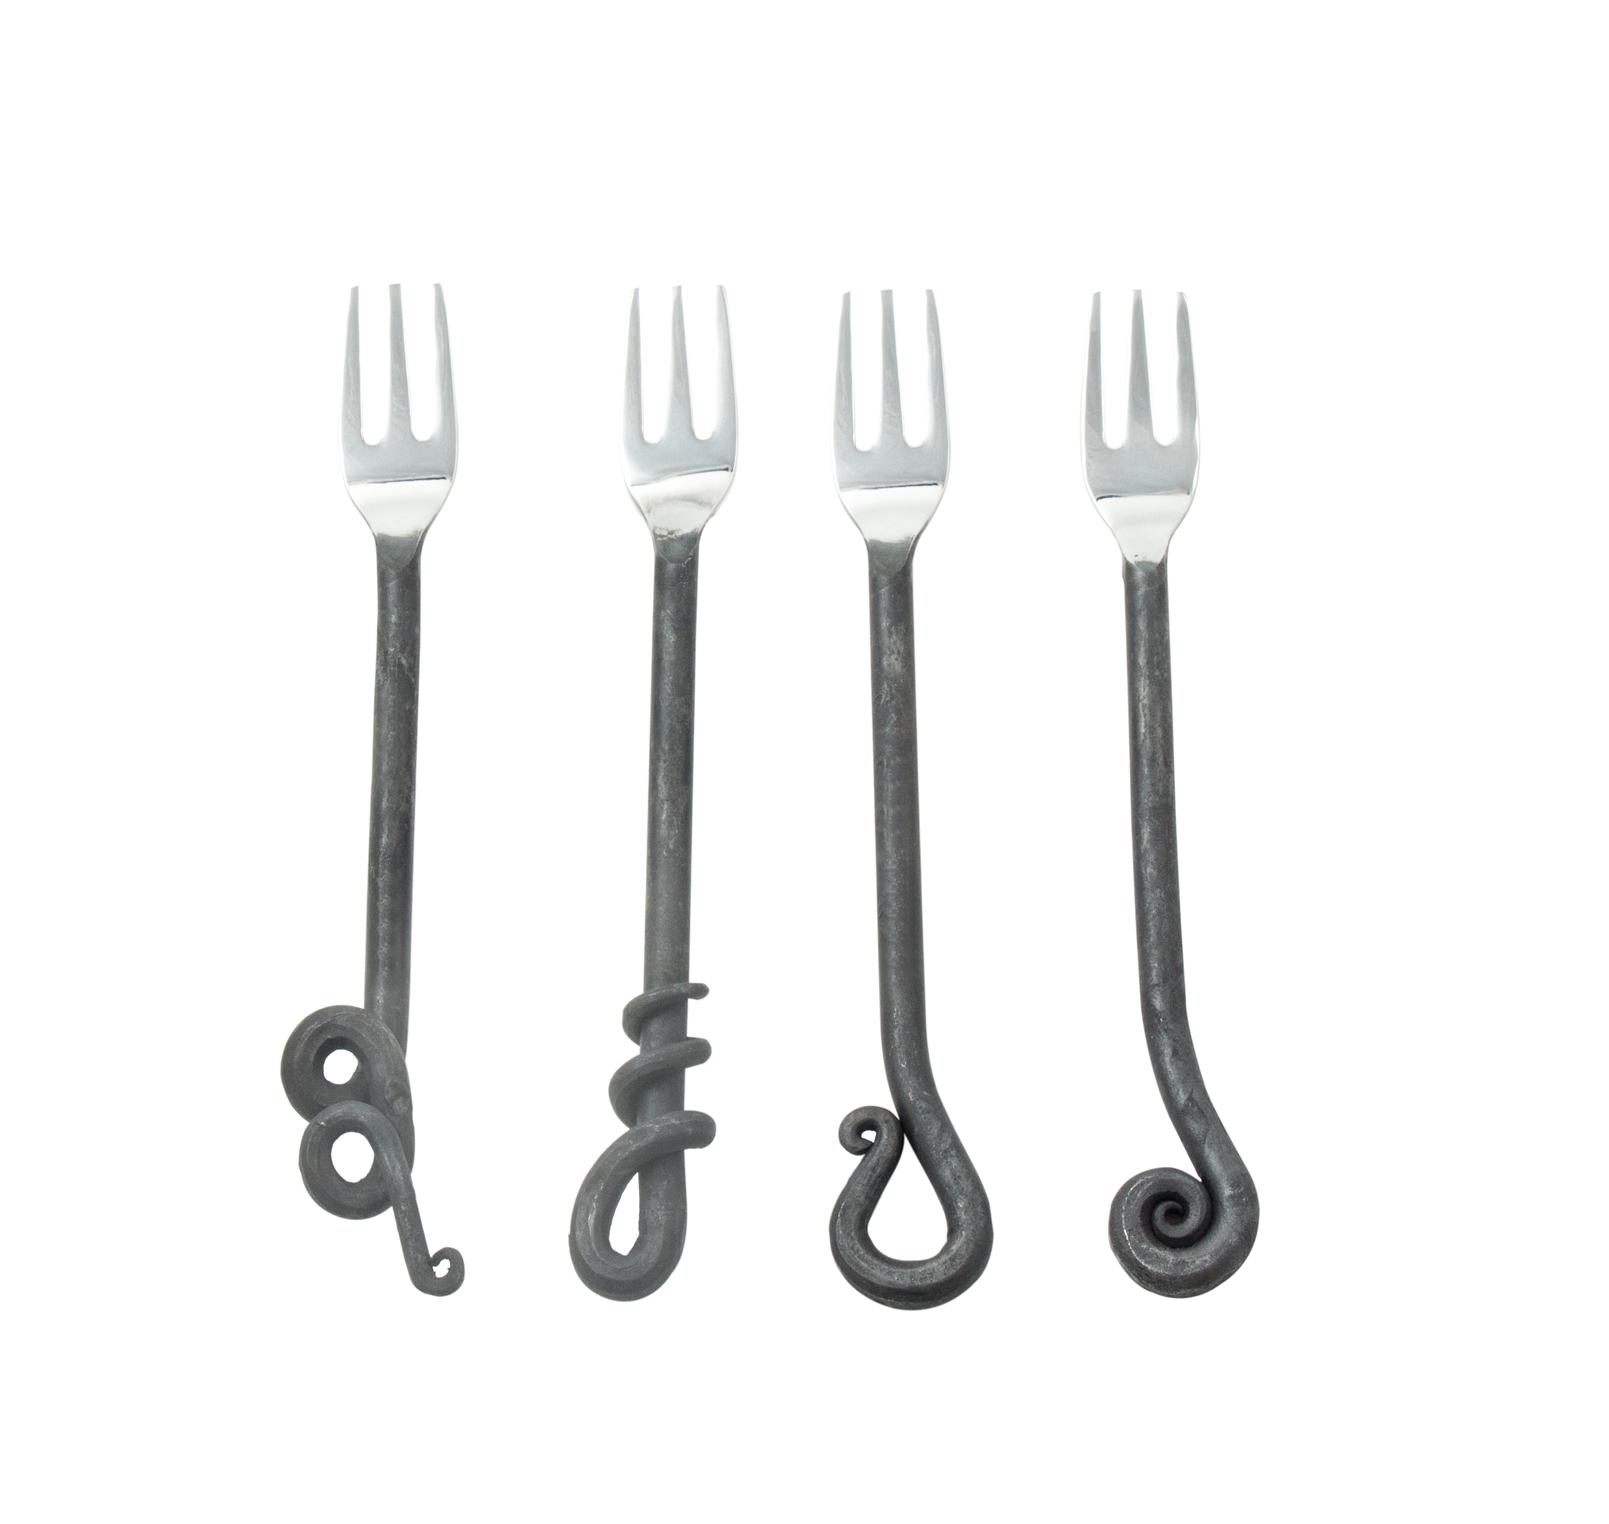 Vineyard Table Hand Forged Cocktail Forks (Set of 4) - Utensils - Vineyard Table - Brand_Vineyard Table - Kitchen_Dinnerware - KTFWHS - VT-4702-BRS2322-Set-of-4-Hand-Forged-Cocktail-Forks